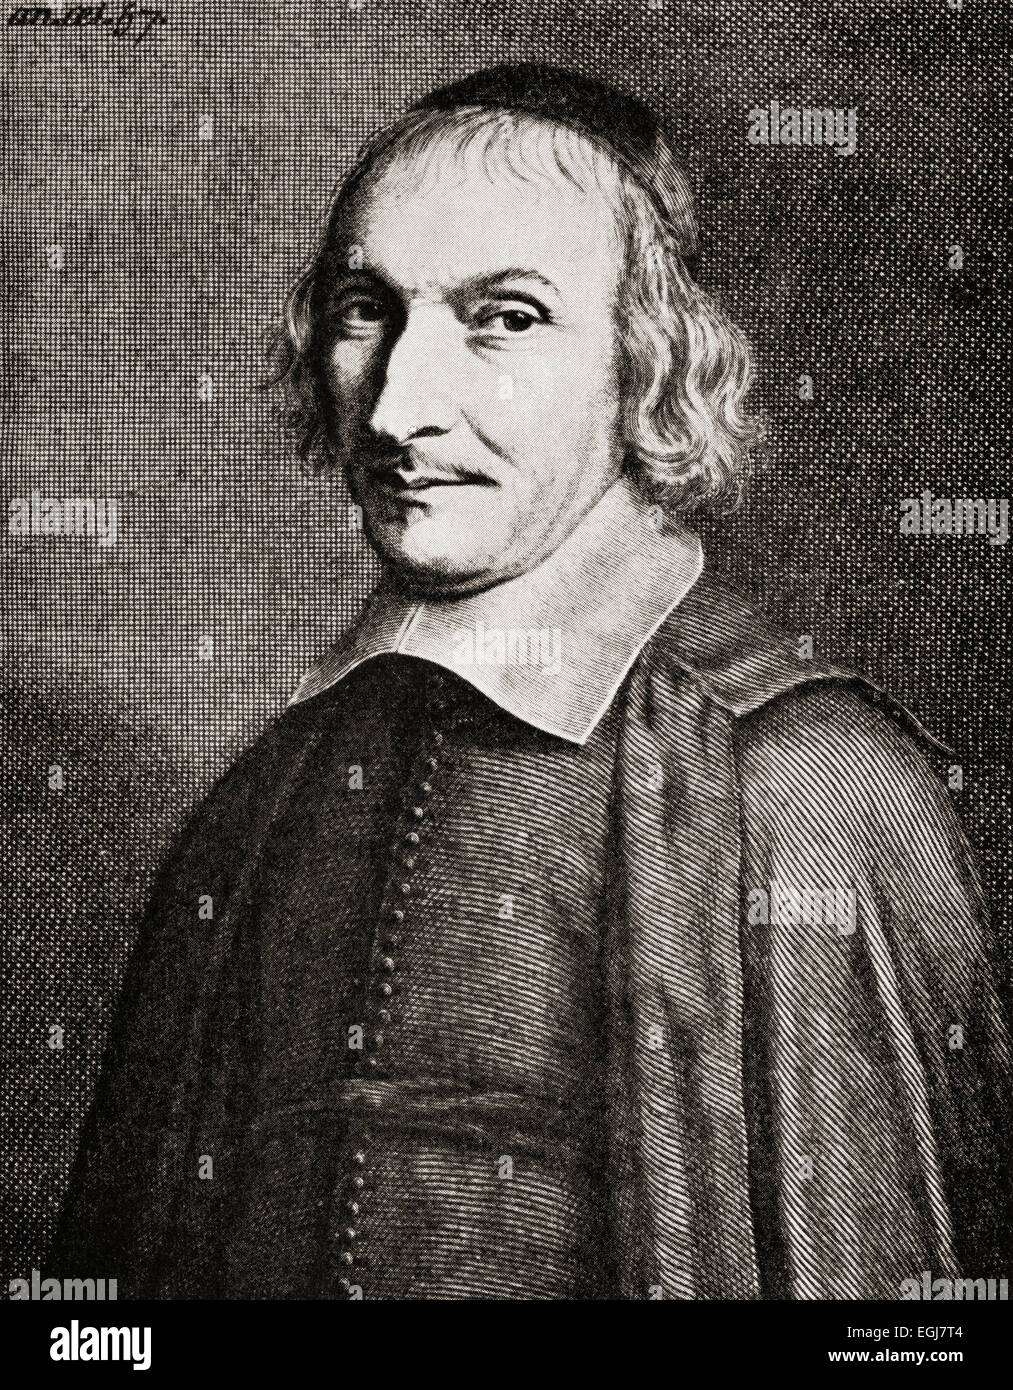 Michel de Marolles, 1600-1681, auch bekannt als Abbé de Marolles.   Französischer Geistlicher, Übersetzer und Sammler von Gravuren. Stockfoto